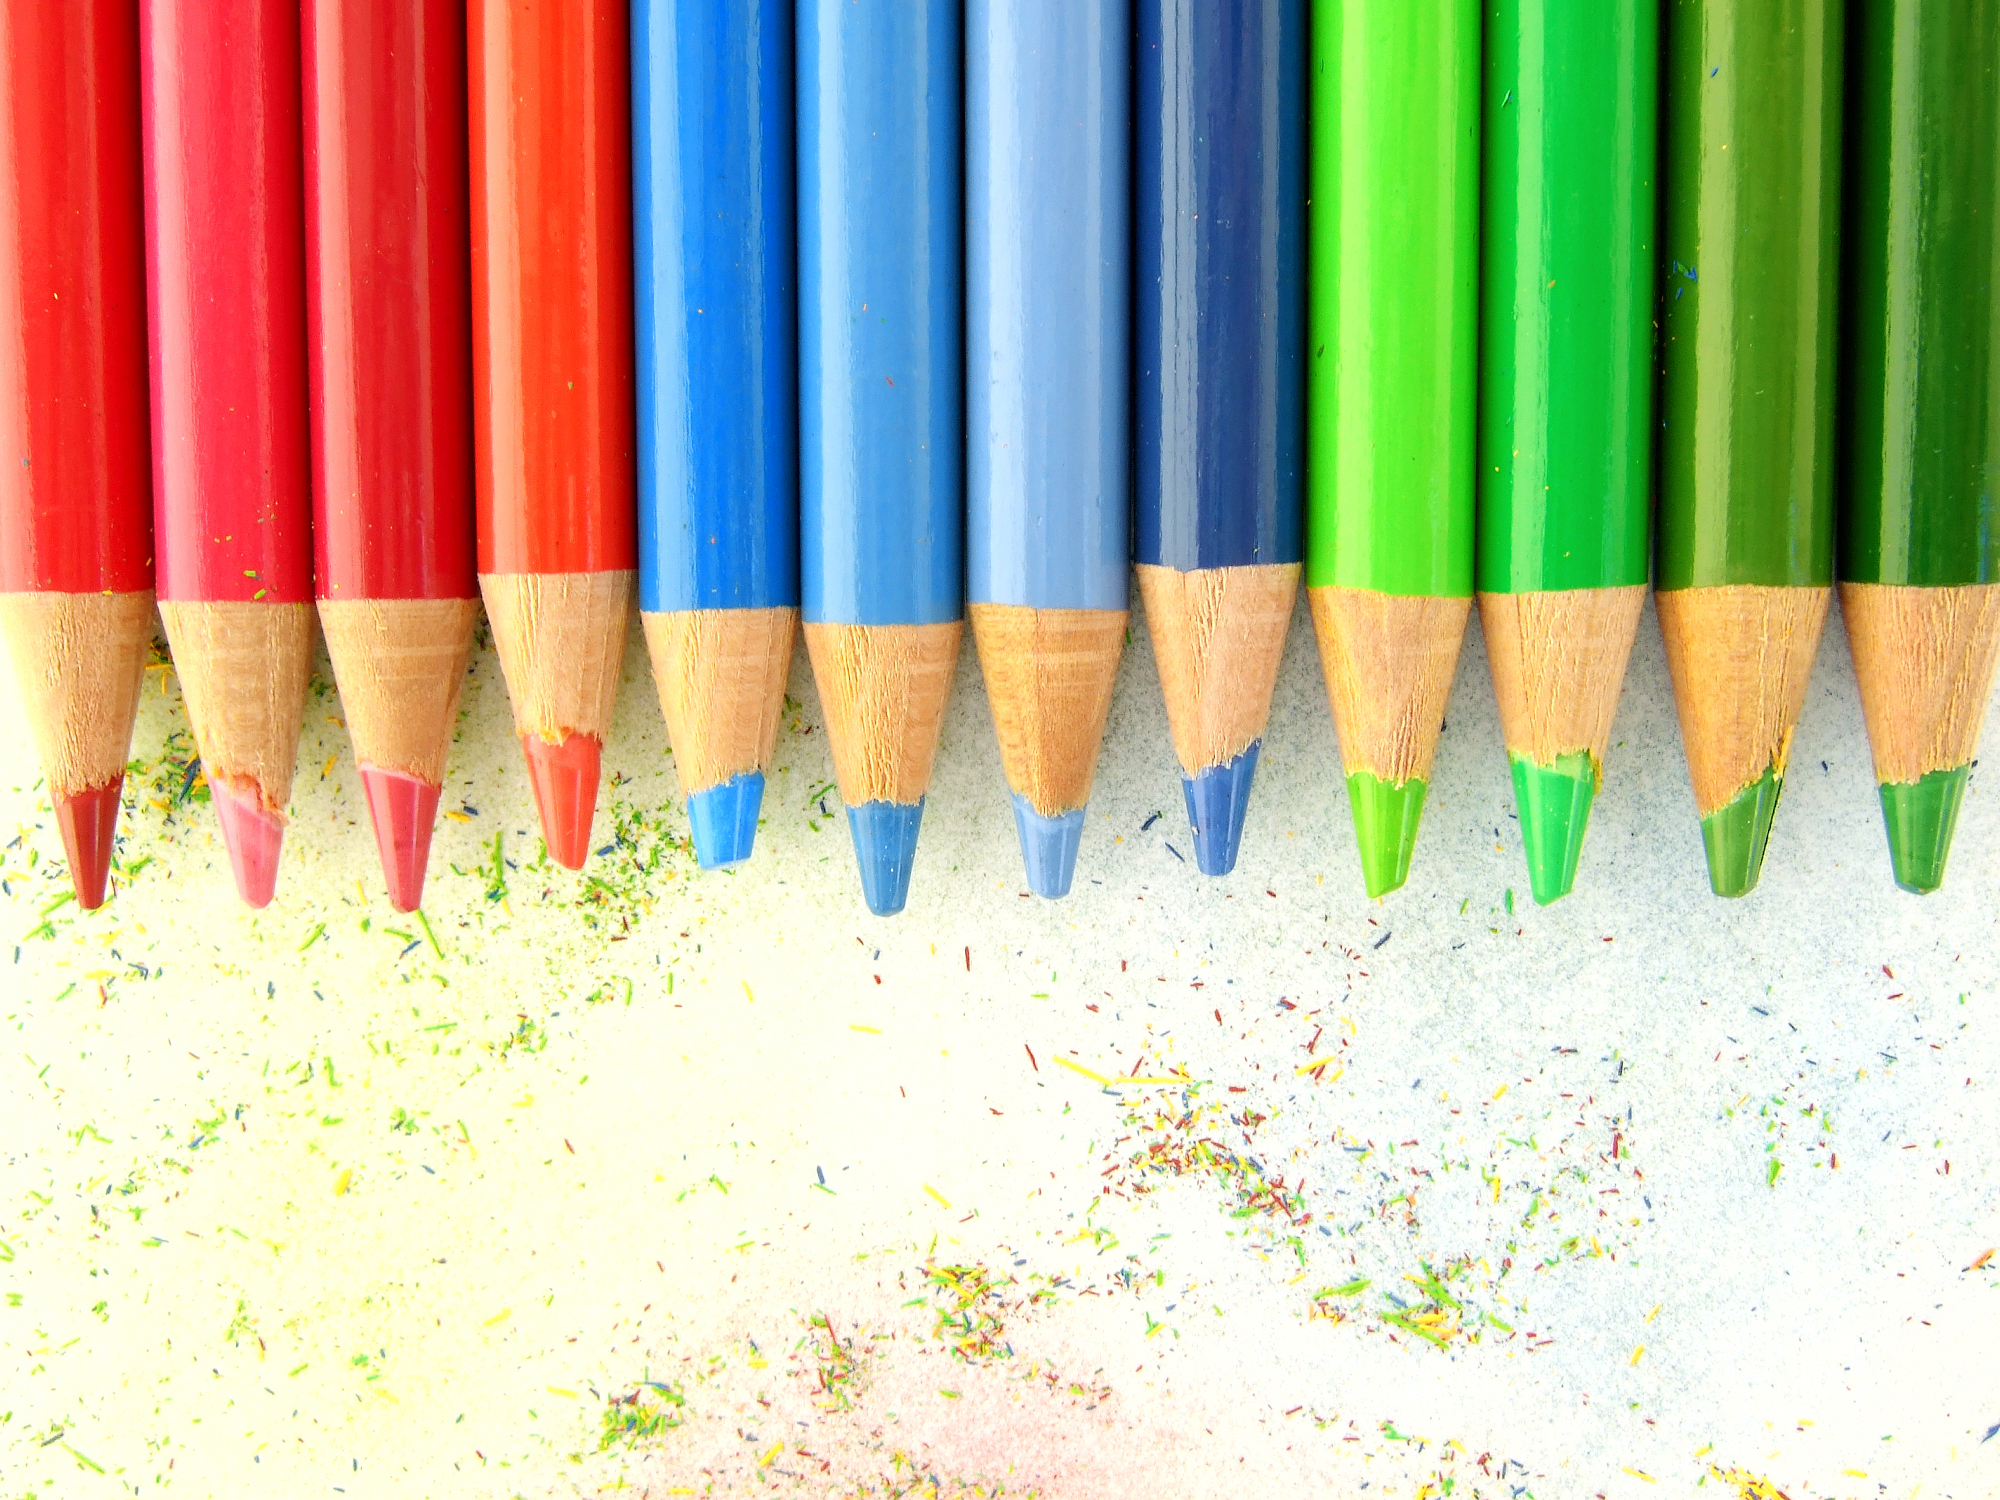 carta da parati a matita colorata,matita,forniture per ufficio,strumento di scrittura,colorfulness,stazionario